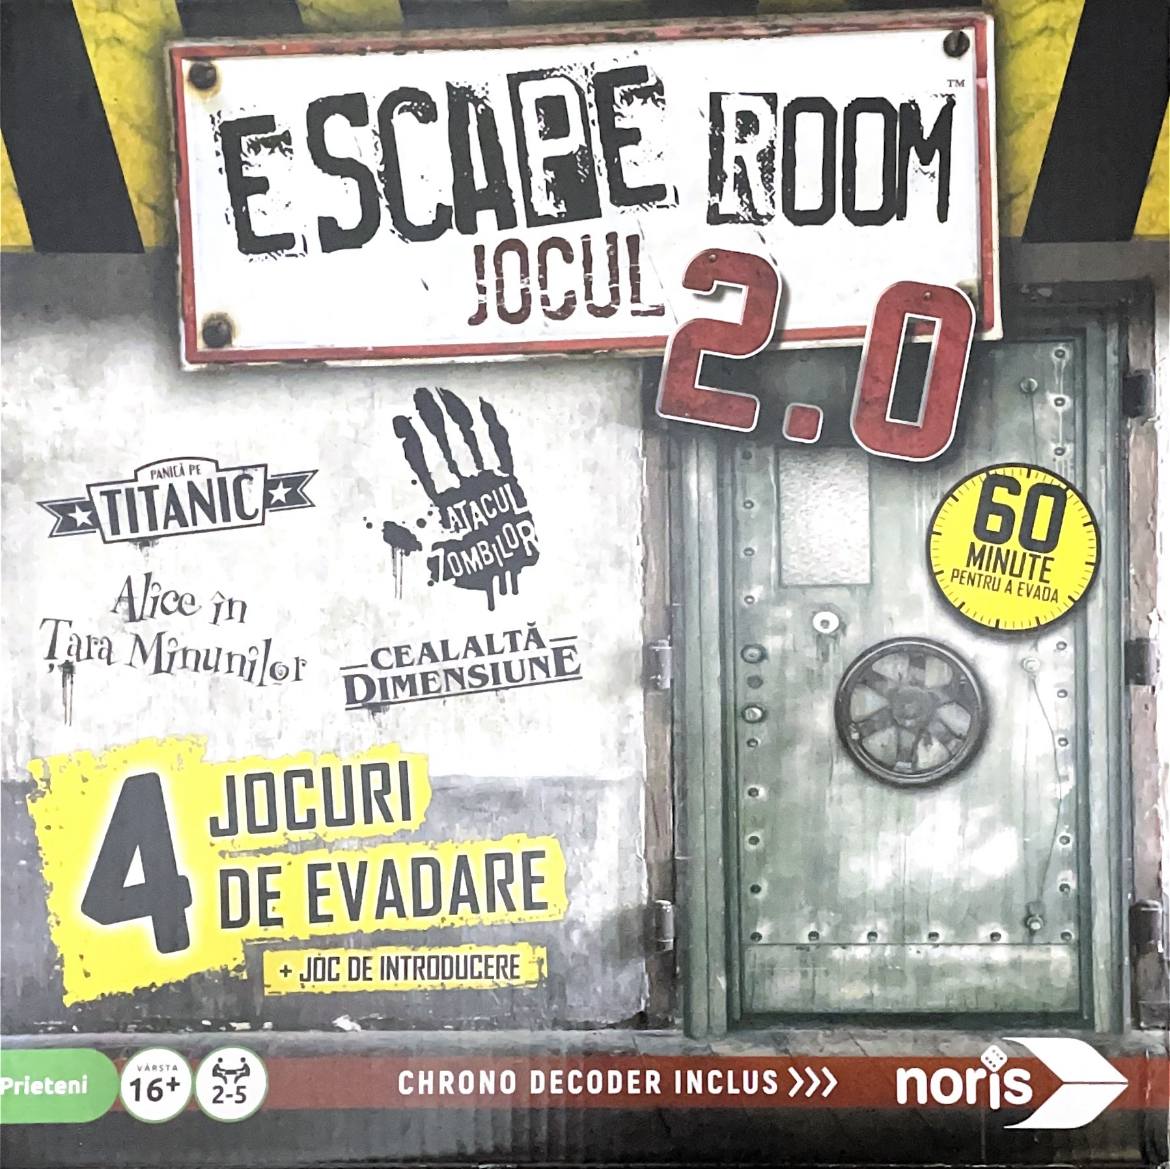 Board Games: Catan; Azul; Activity; Carcassonne și multe altele. Escape Room Jocul 2.0